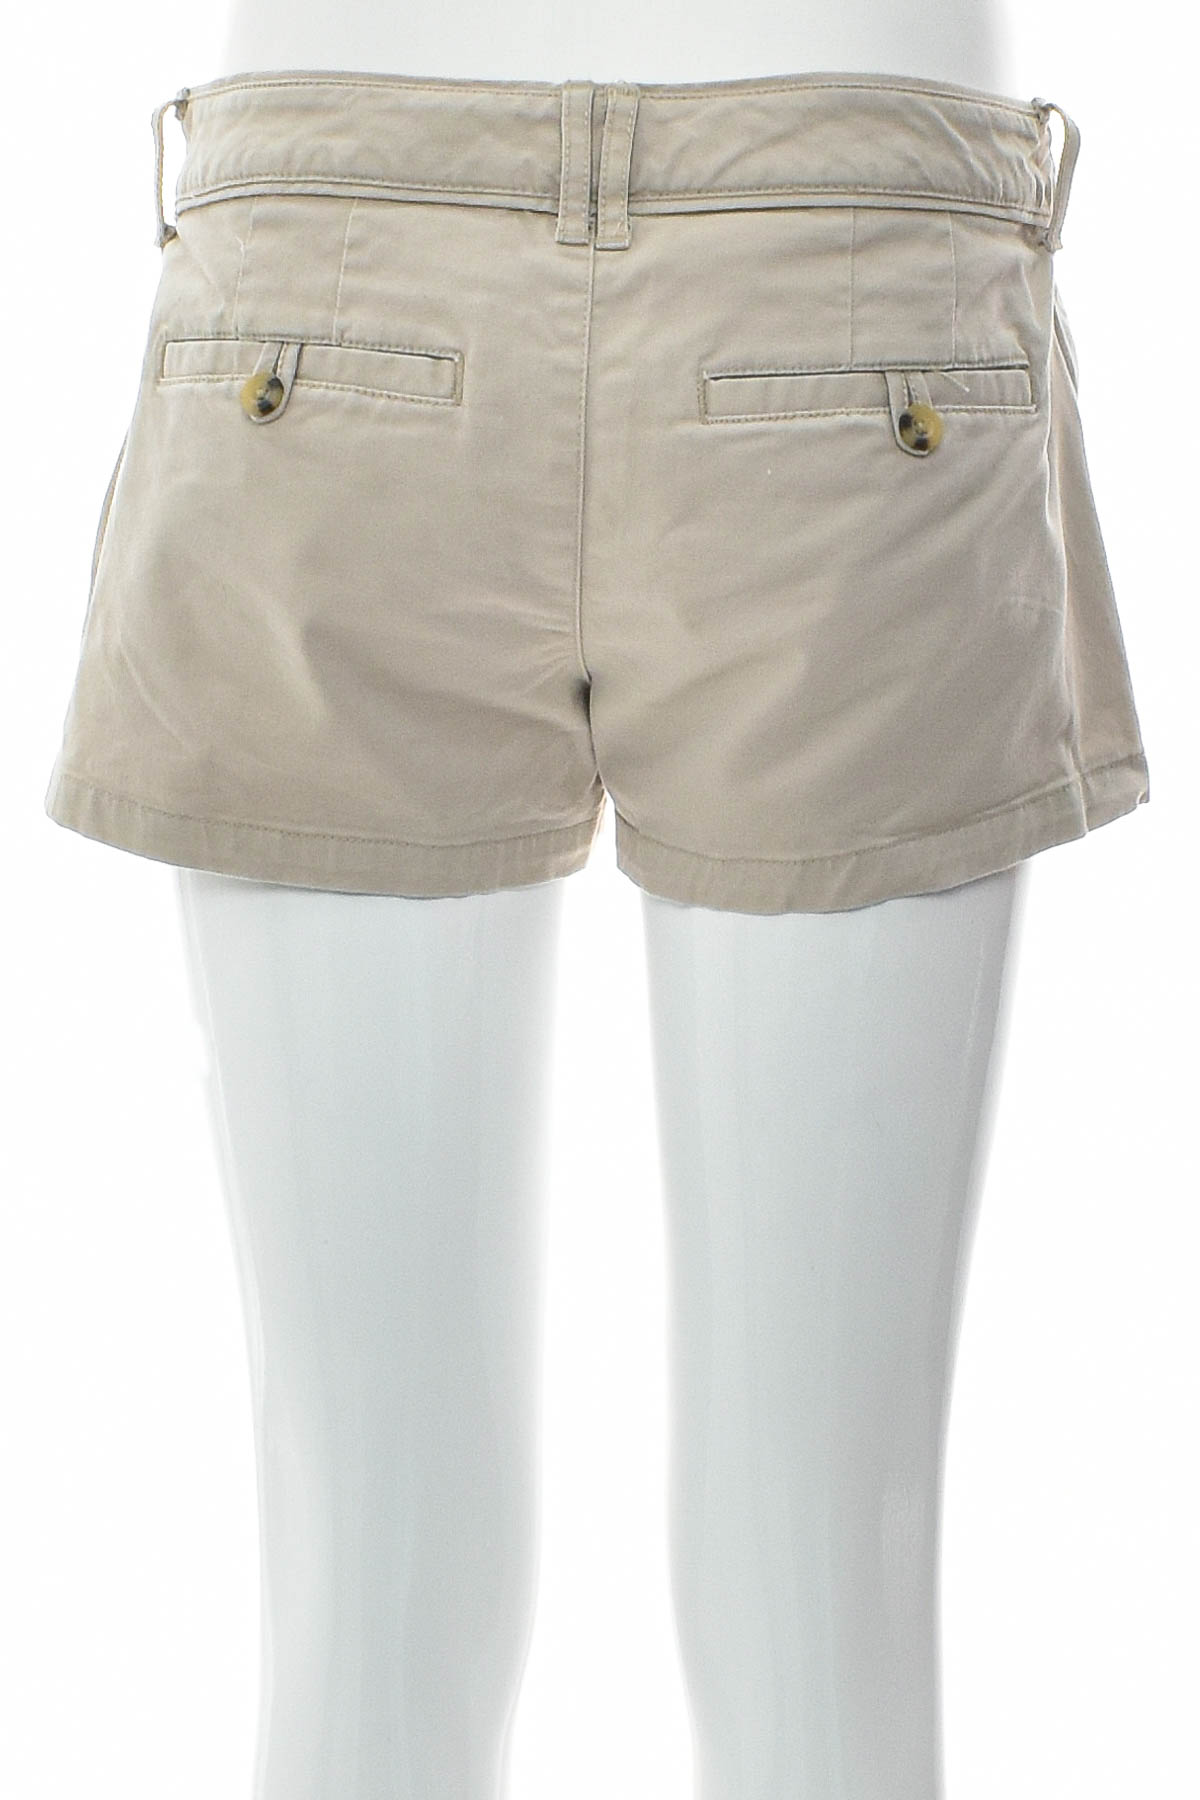 Γυναικείο κοντό παντελόνι - ARIZONA JEAN CO - 1